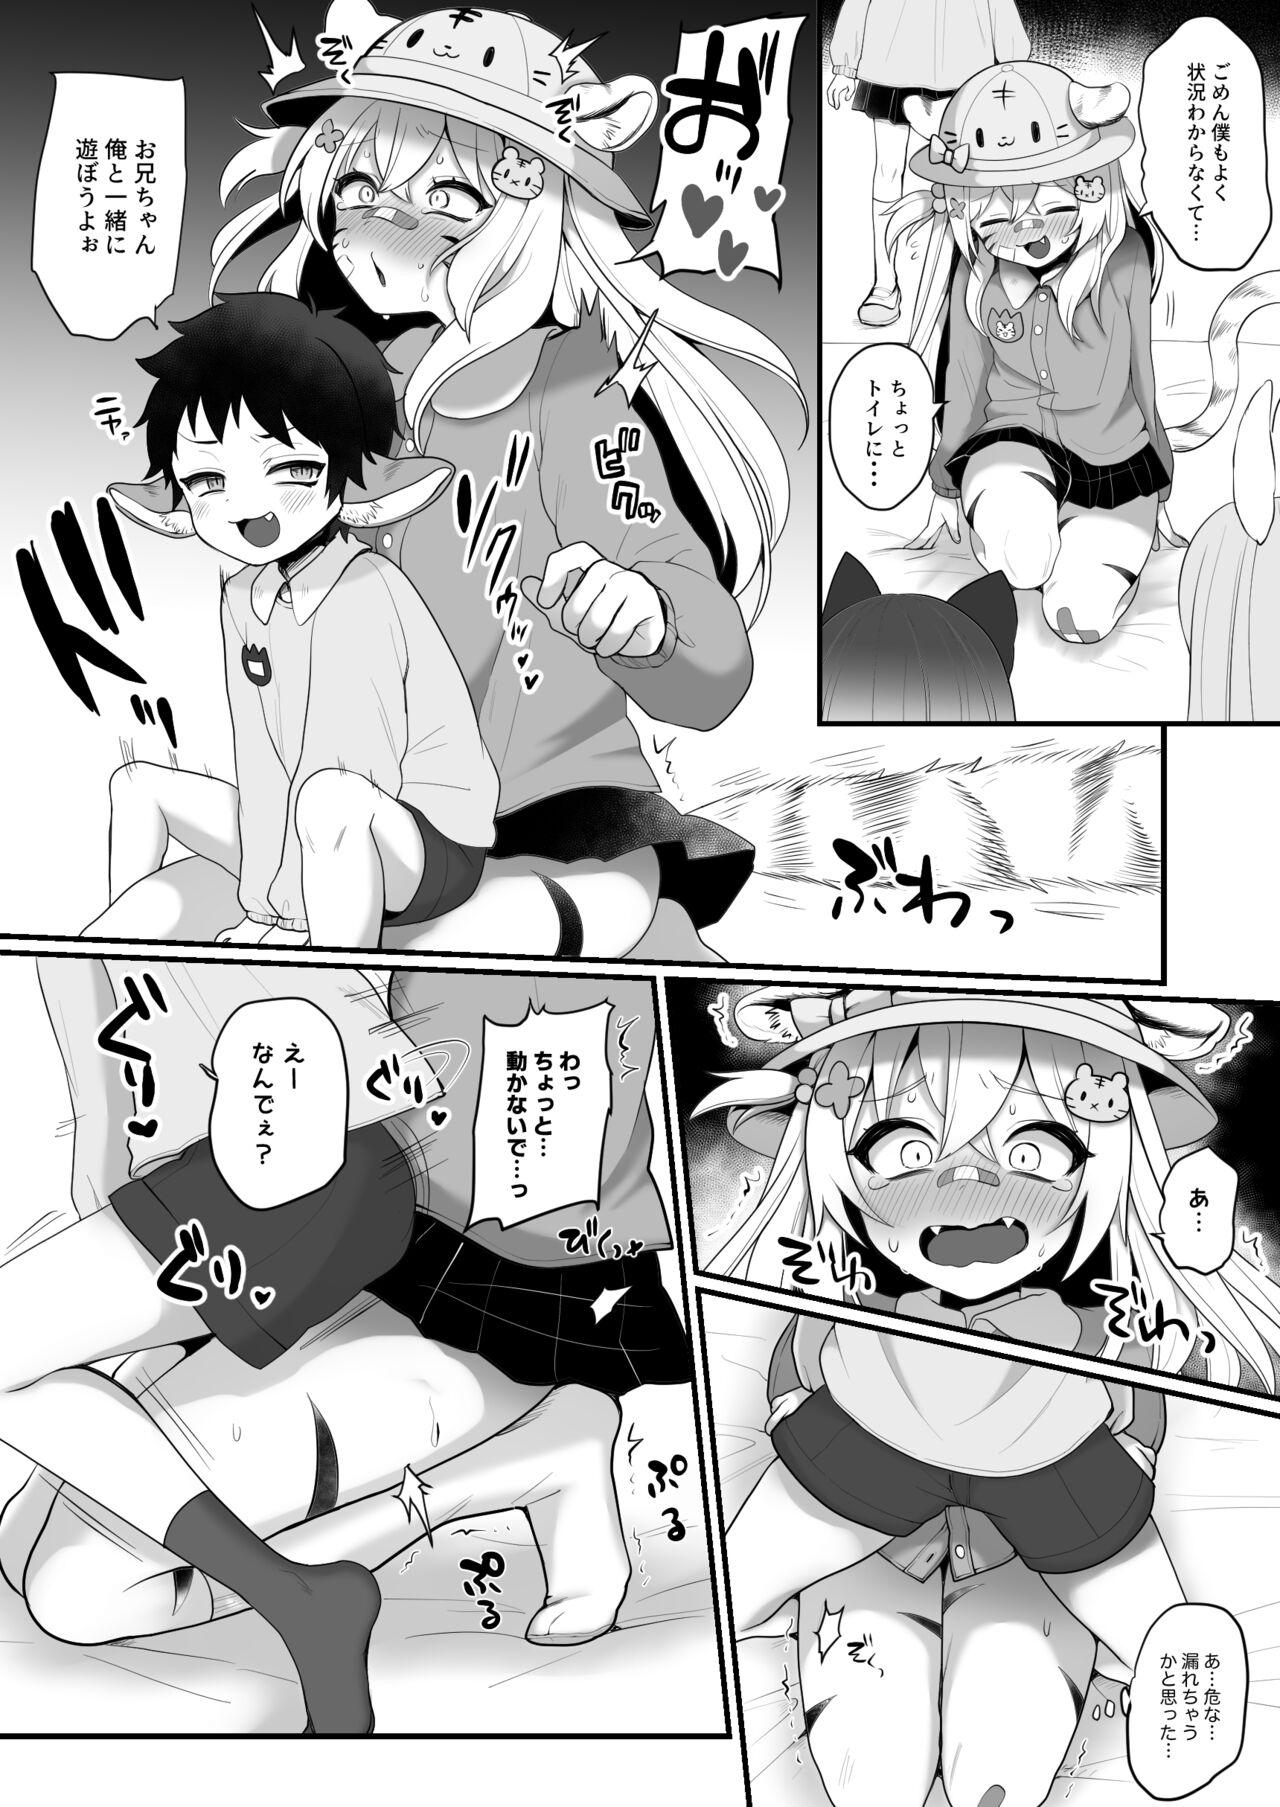 Safado Omorashi Manga Rubdown - Page 3